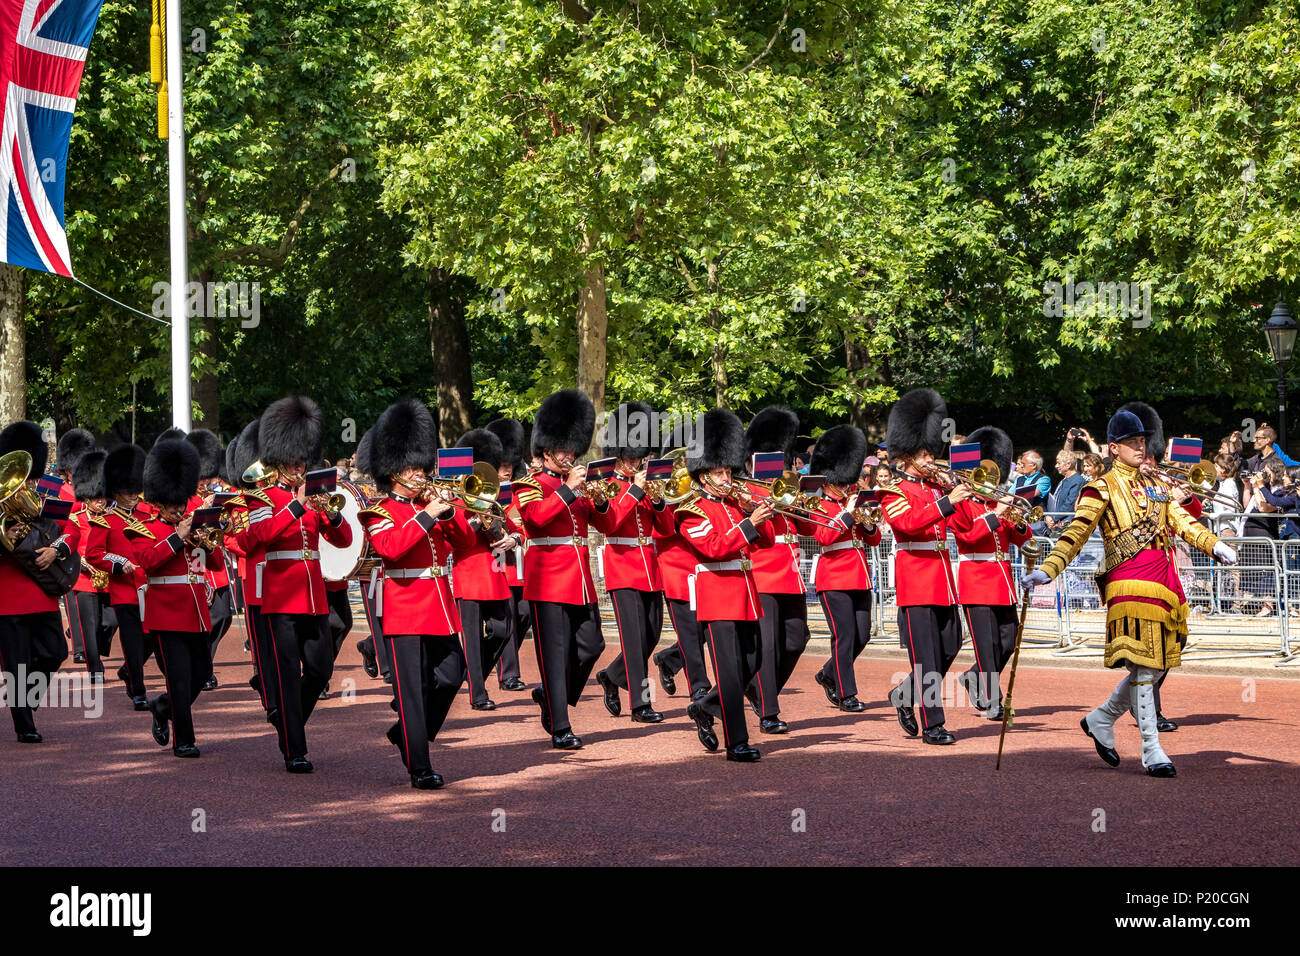 Les groupes massés de la division Guards défilent le long du Mall à la Queen's Birthday Parade, également connue sous le nom de Trooping the Color, Londres, Royaume-Uni Banque D'Images